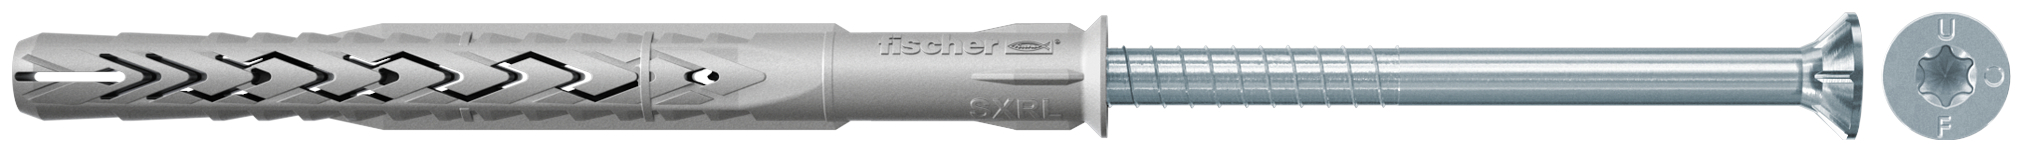 fischer Tasselli prolungati SXRL 8x100 T (1 Pz.) Tassello prolungato in nylon con marcatura CE con vite premontata T.S.P. impronta torx fie3159